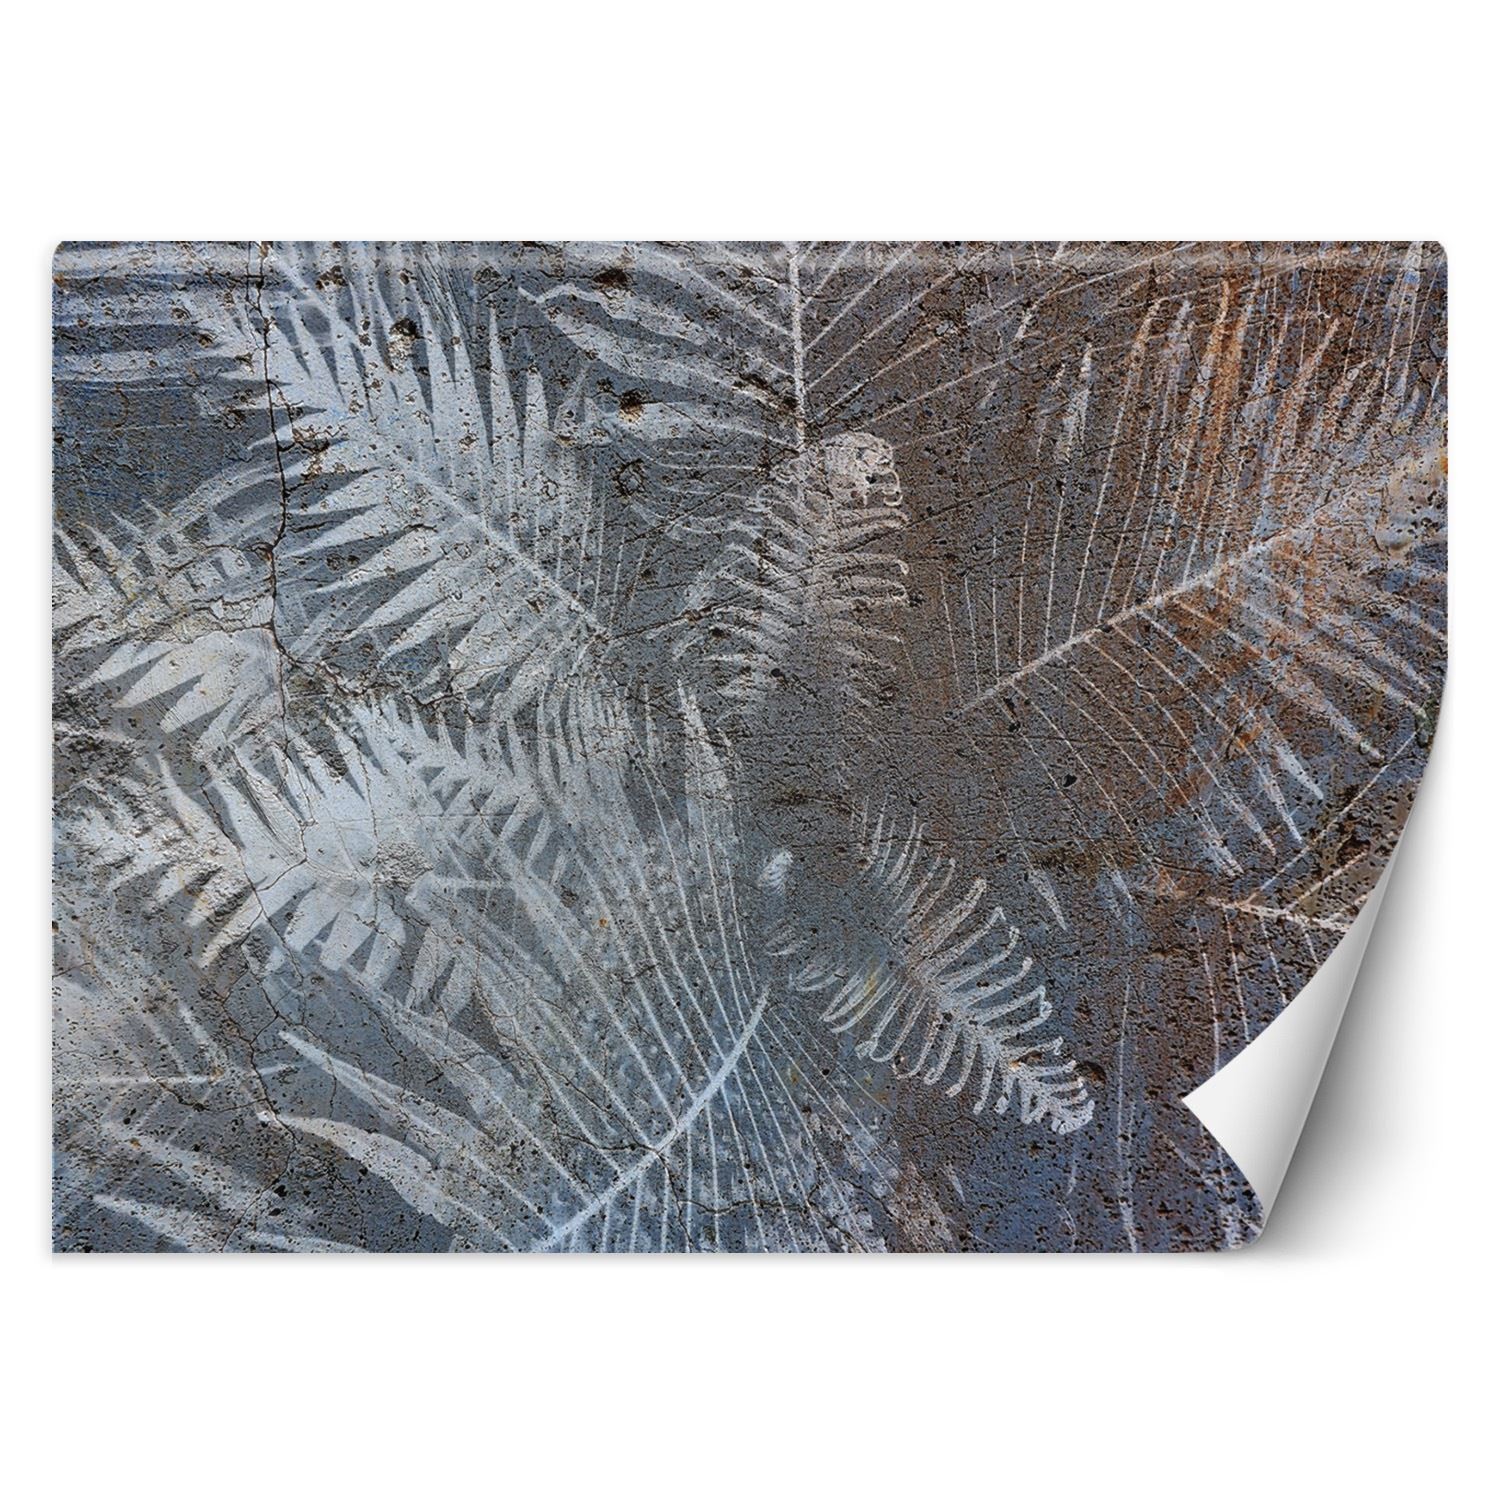 Trend24 – Behang – Palmblaadjes Op Beton – Behangpapier – Behang Woonkamer – Fotobehang – 450x315x2 cm – Incl. behanglijm